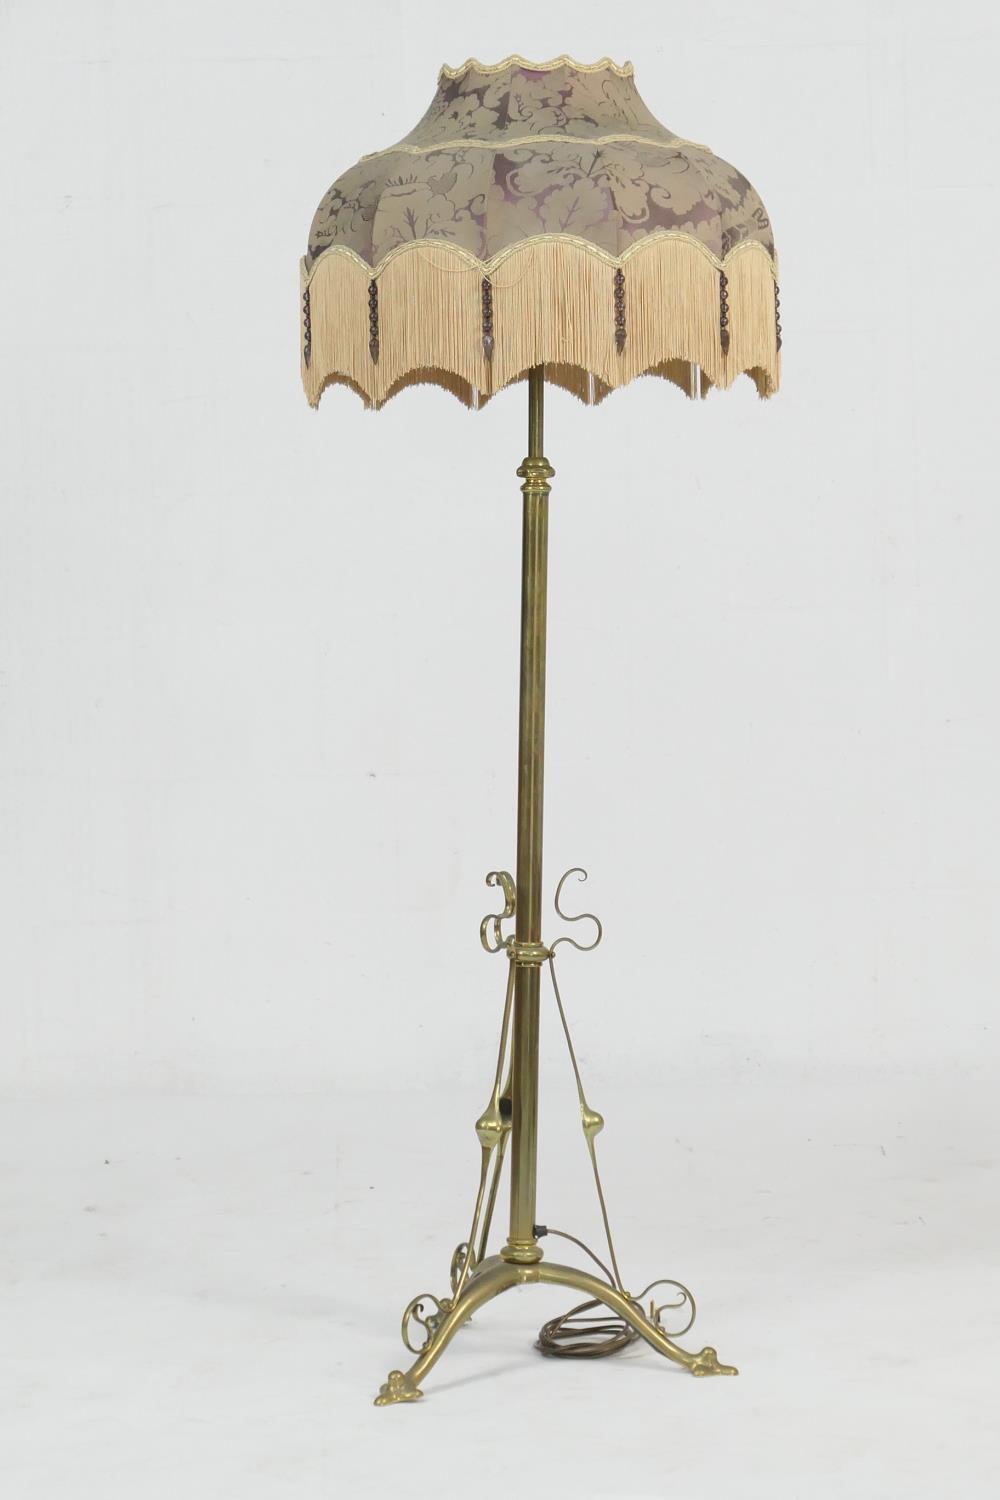 Edwardian brass extending standard lamp, in Art Nouveau style, having a purple silk damask fringed